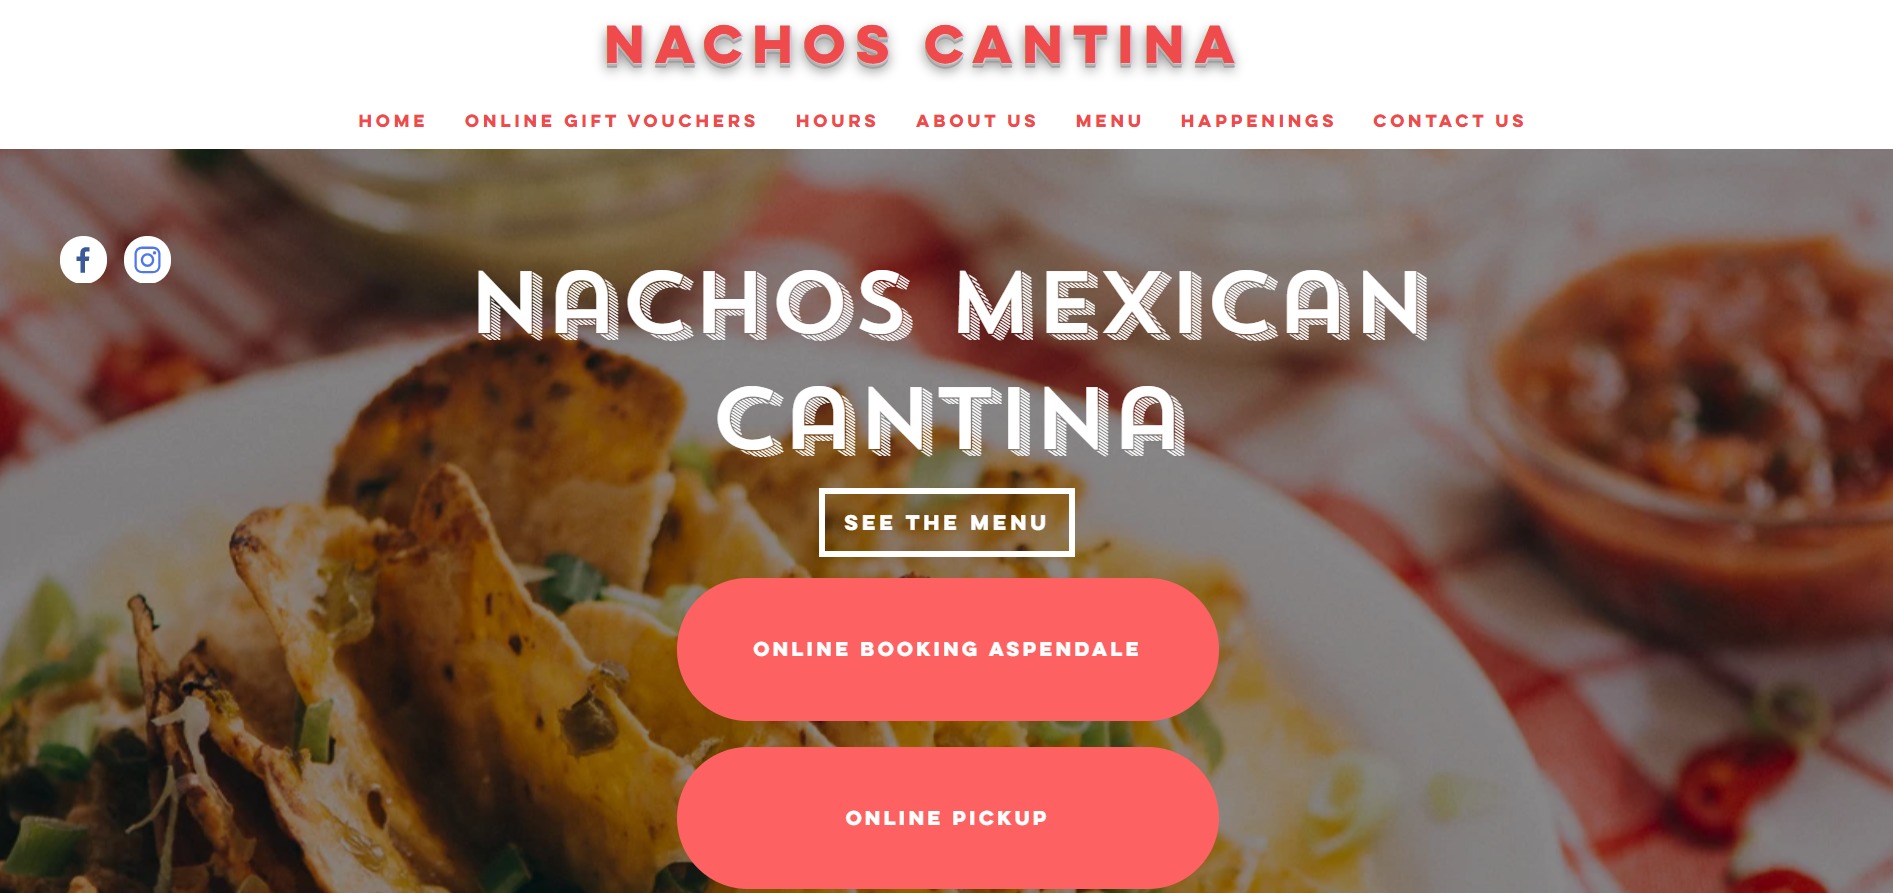 Nachos Mexican Cantina